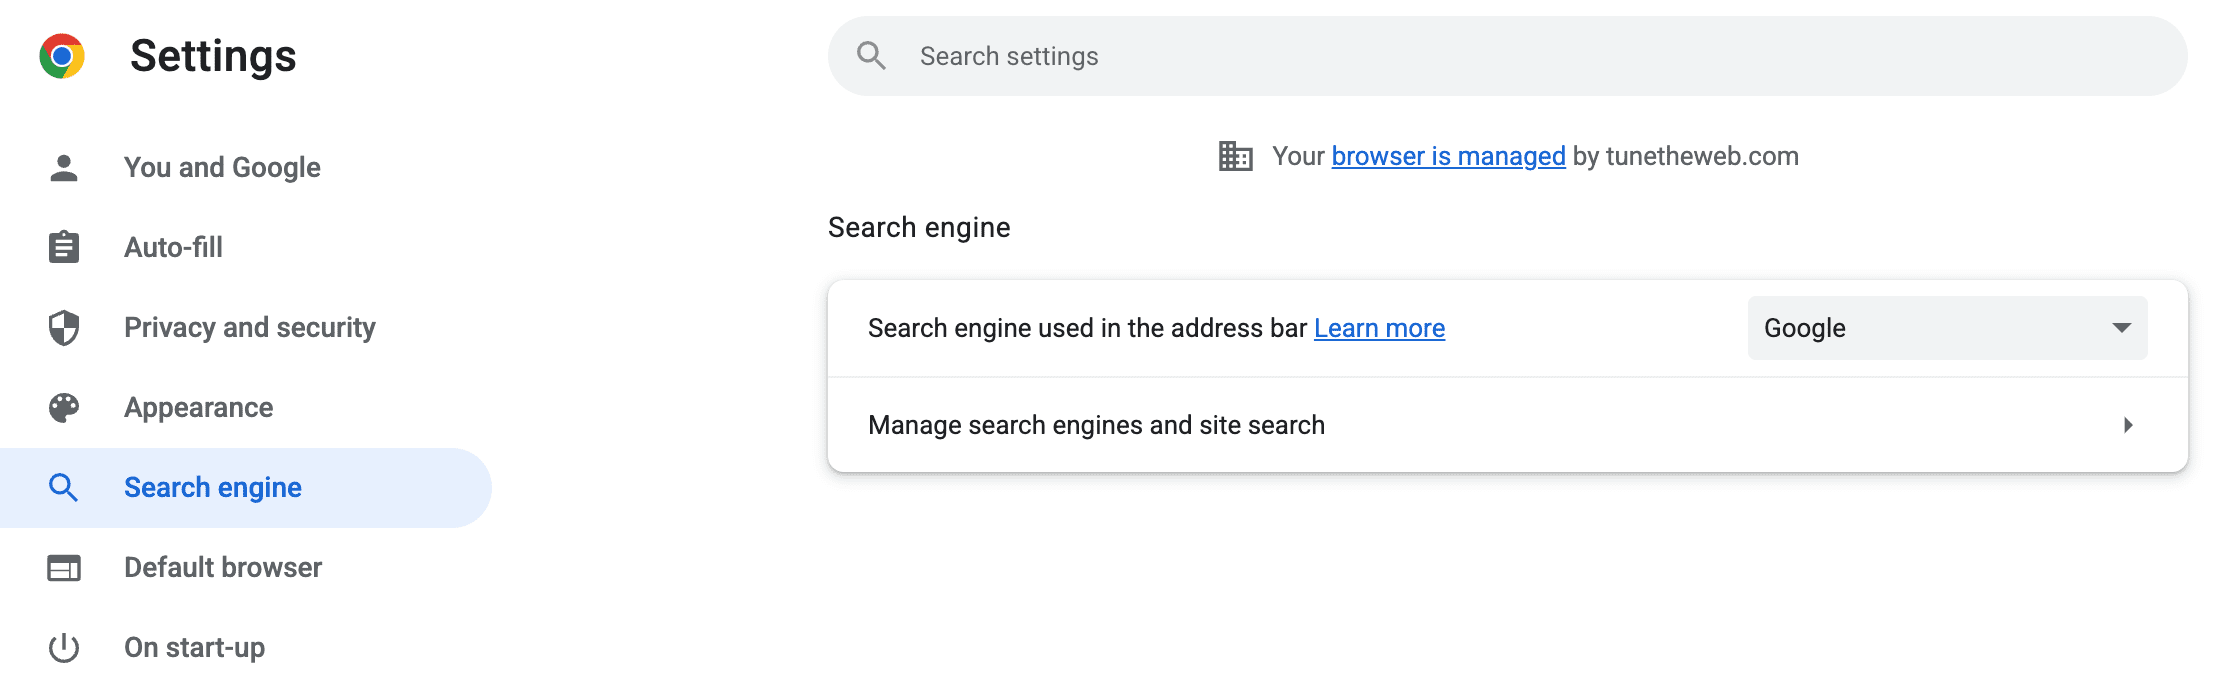 Снимок экрана: страница настроек Chrome для поисковых систем, на которой вы можете «Управлять поисковыми системами и поиском по сайту».